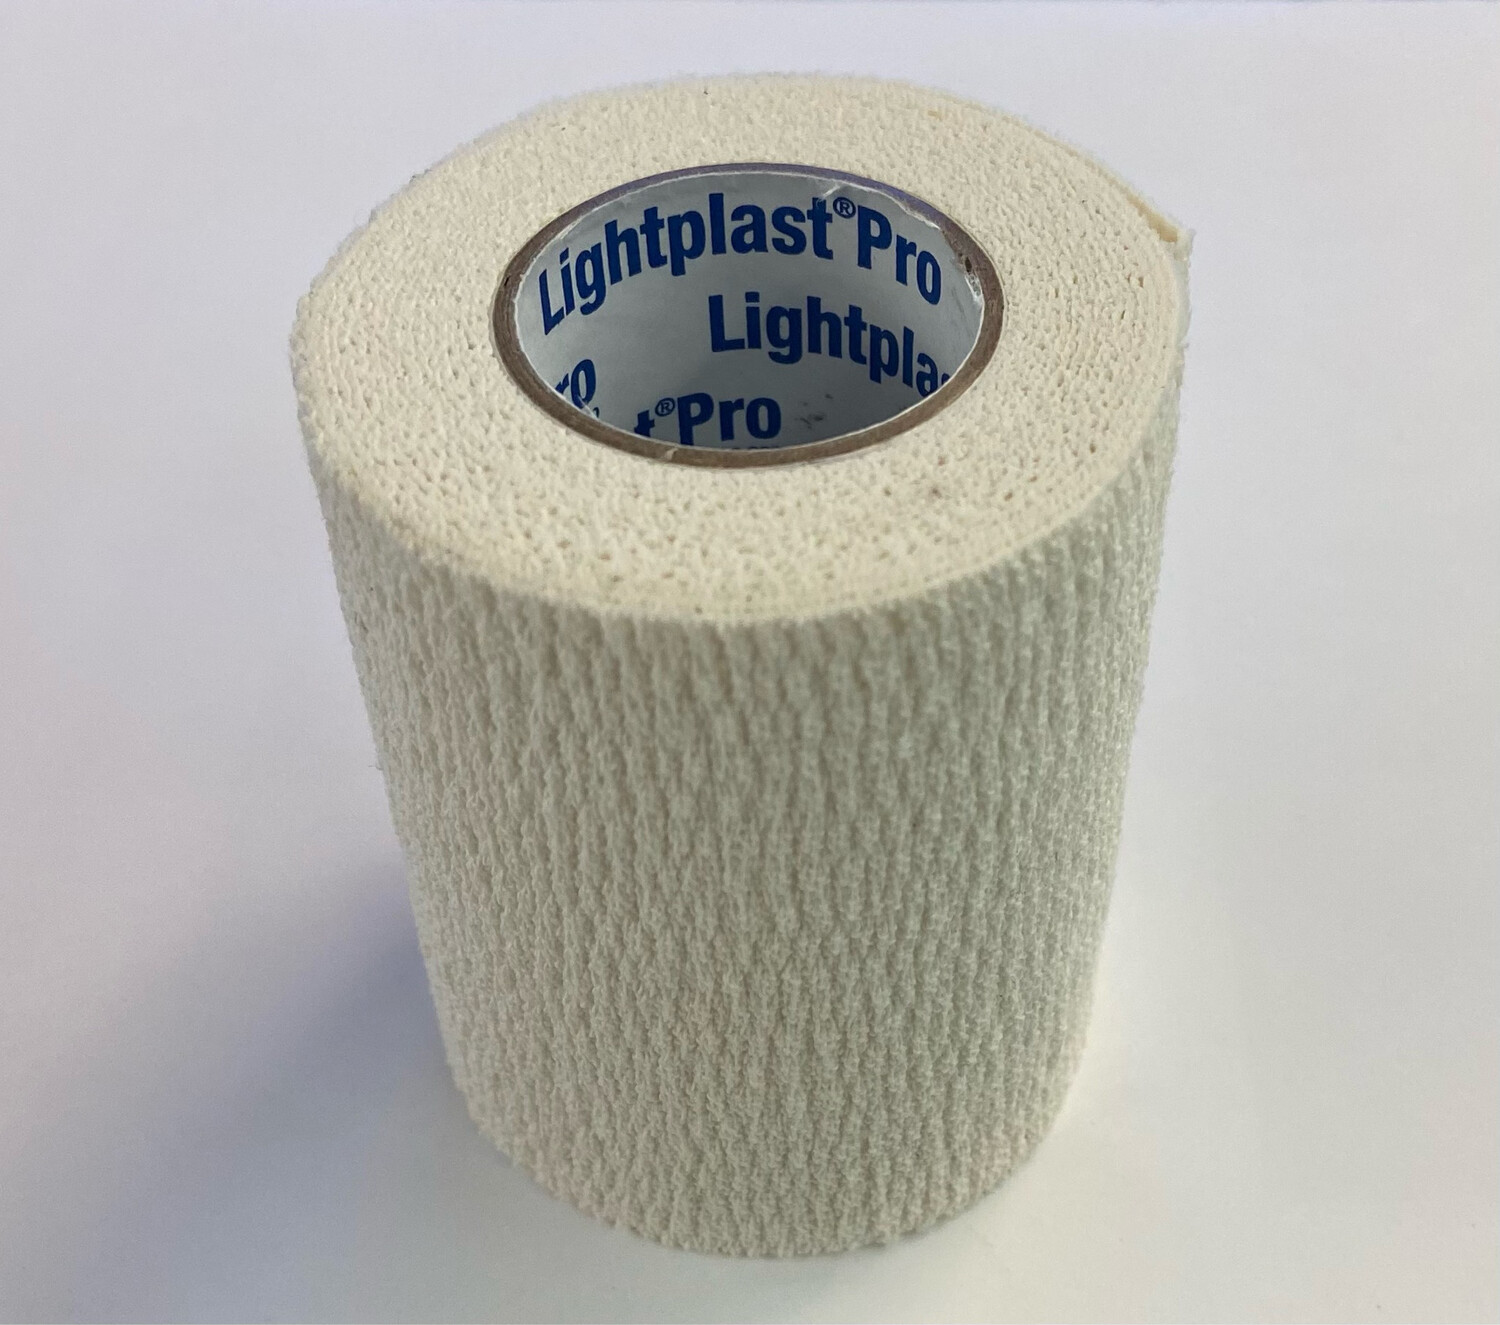 Lightplast Pro